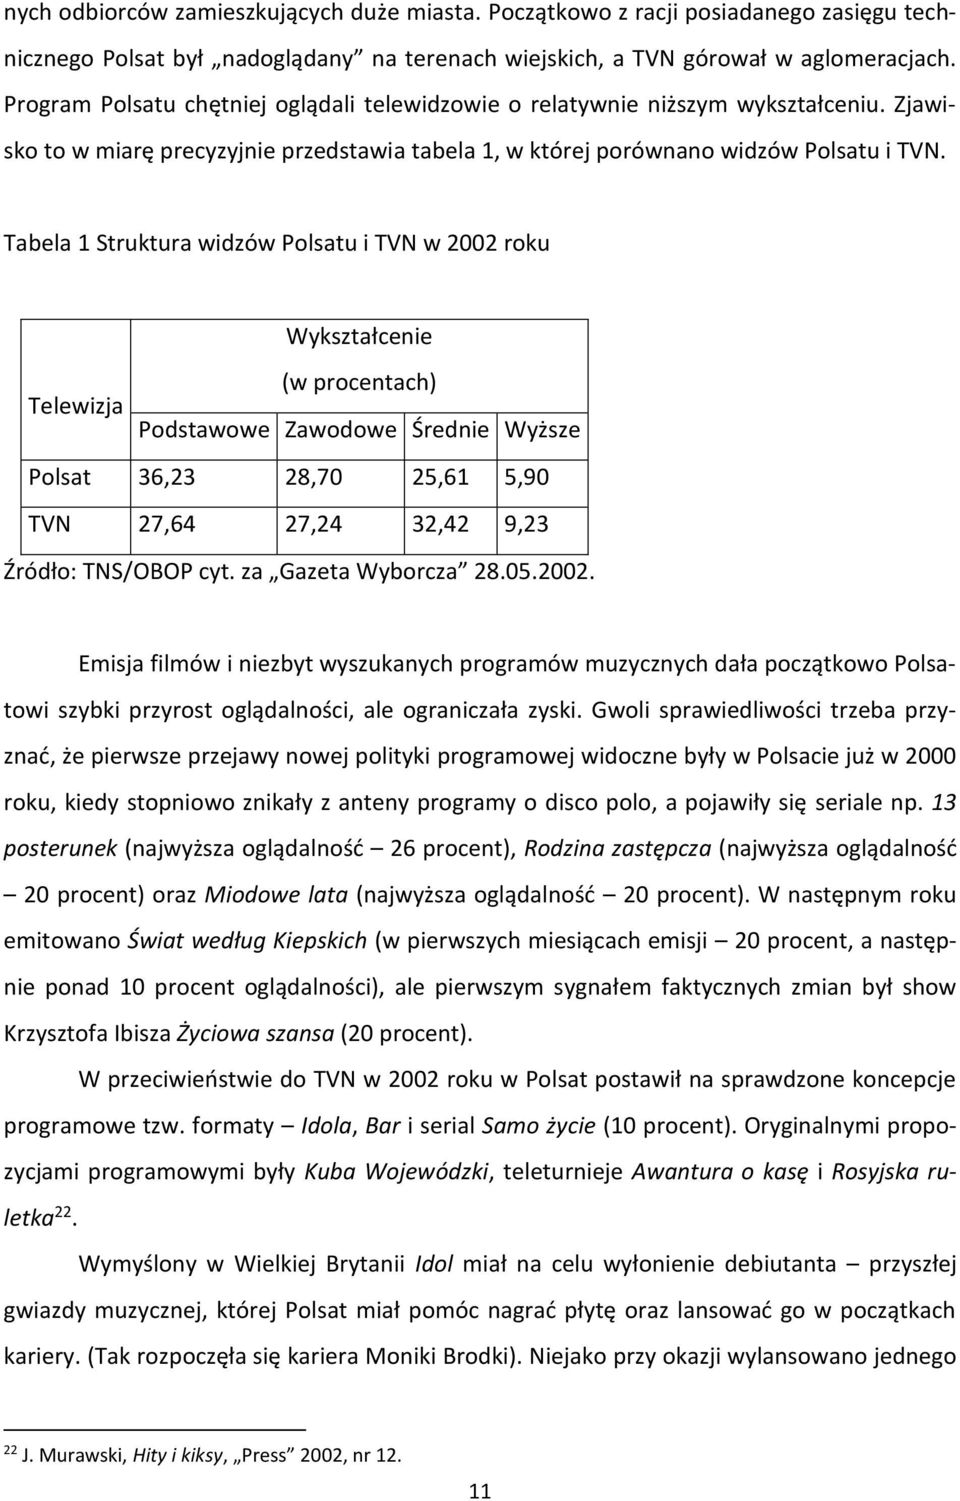 Tabela 1 Struktura widzów Polsatu i TVN w 2002 roku Wykształcenie (w procentach) Telewizja Podstawowe Zawodowe Średnie Wyższe Polsat 36,23 28,70 25,61 5,90 TVN 27,64 27,24 32,42 9,23 Źródło: TNS/OBOP